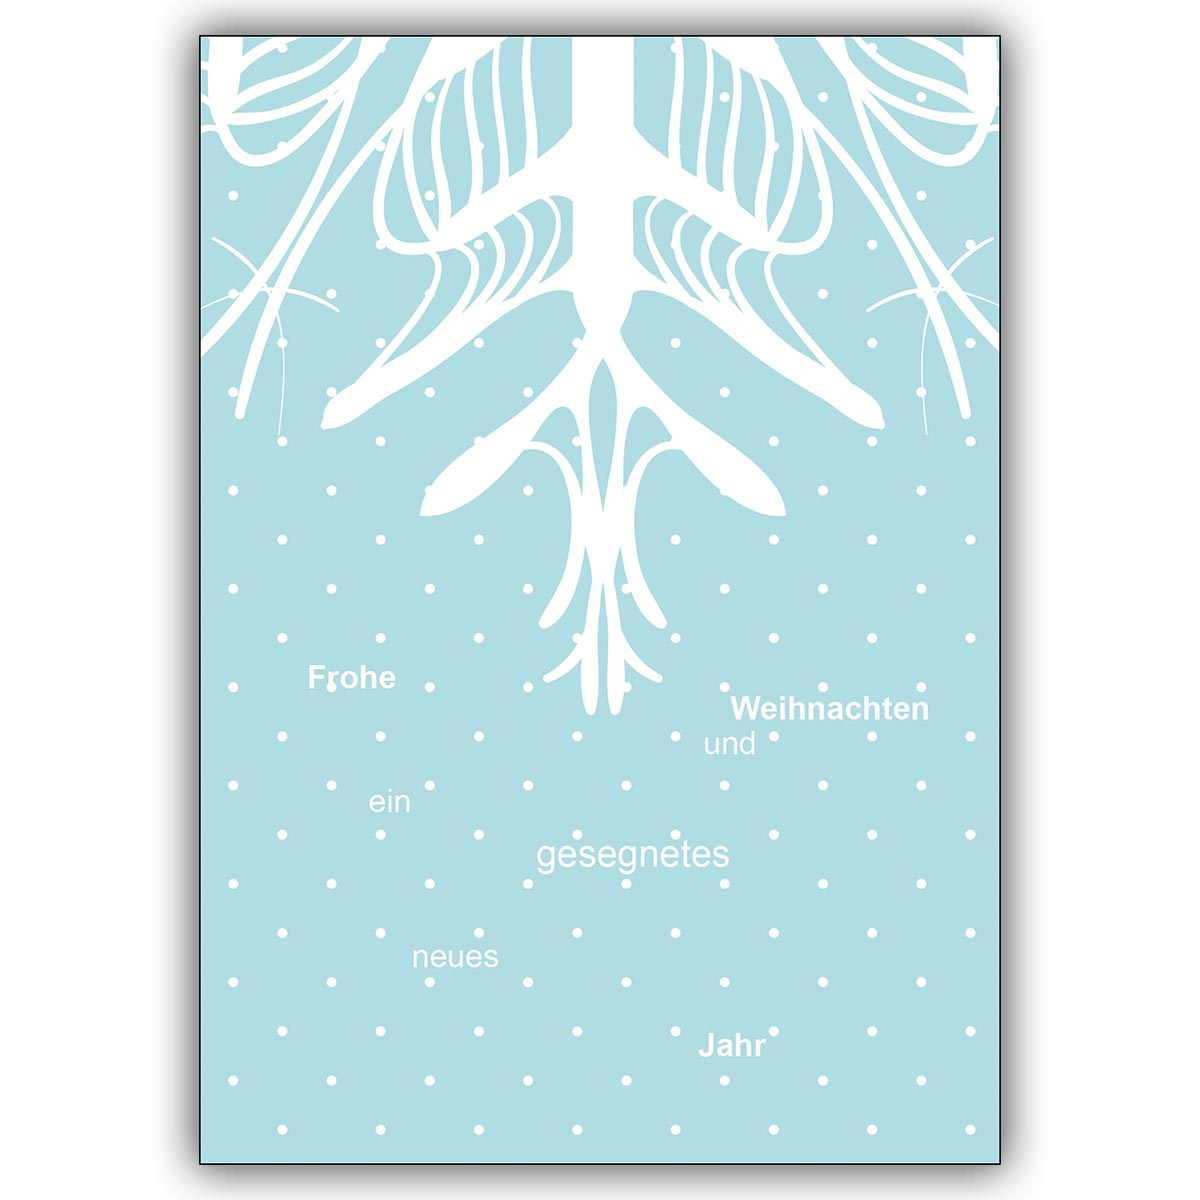 Coole Weihnachtskarte mit Schneeflocke und gestreuter Typo